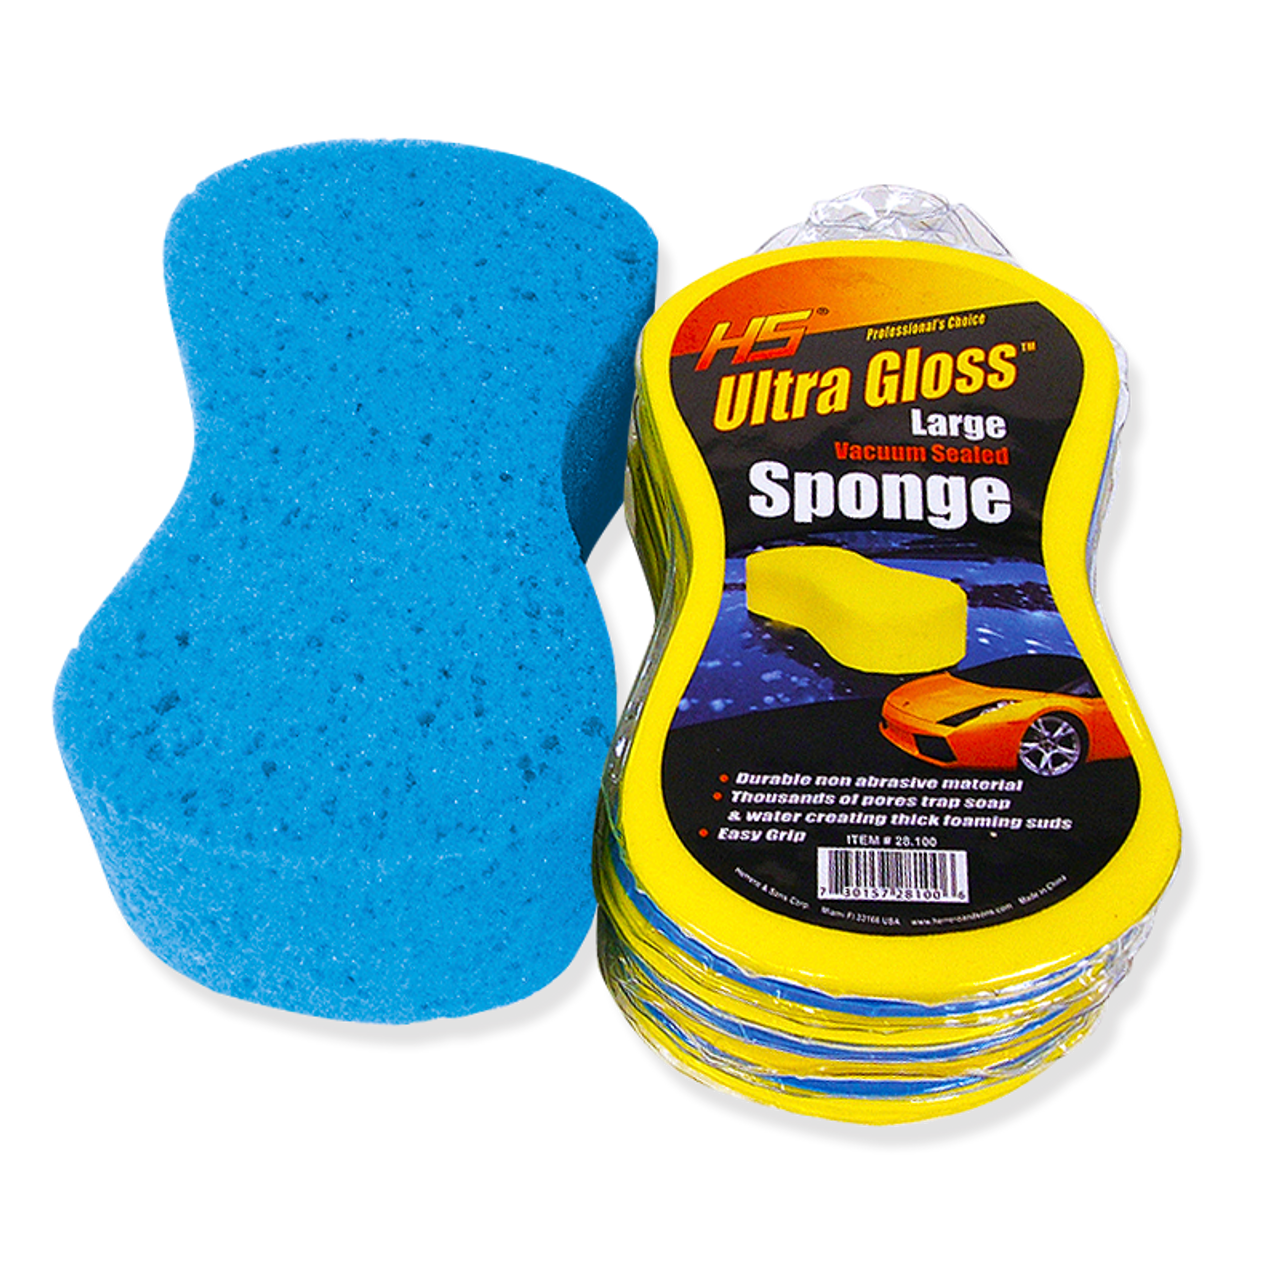 Ultra Gloss 28.100 Extra Large Sponge 24 PACK- cleaning sponge-Large Vacuum Sealed Sponge-non-abrasive sponge-car care-sponge for cleaning cars-cellulose sponge